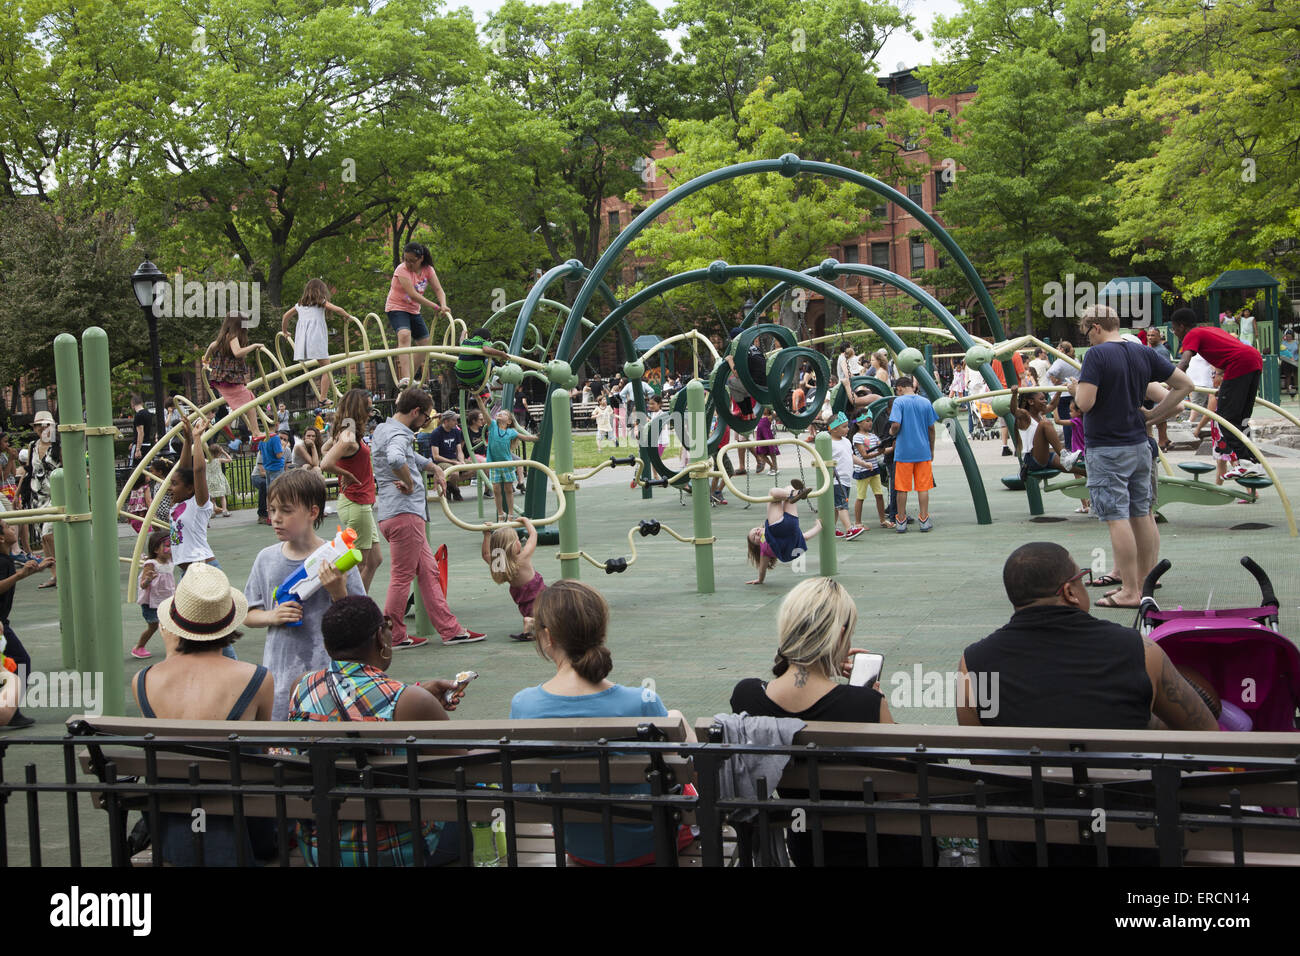 Aire de voisinage est bondé avec les familles et les enfants sur une chaude journée de printemps dans la région de Park Slope, Brooklyn, New York. Banque D'Images